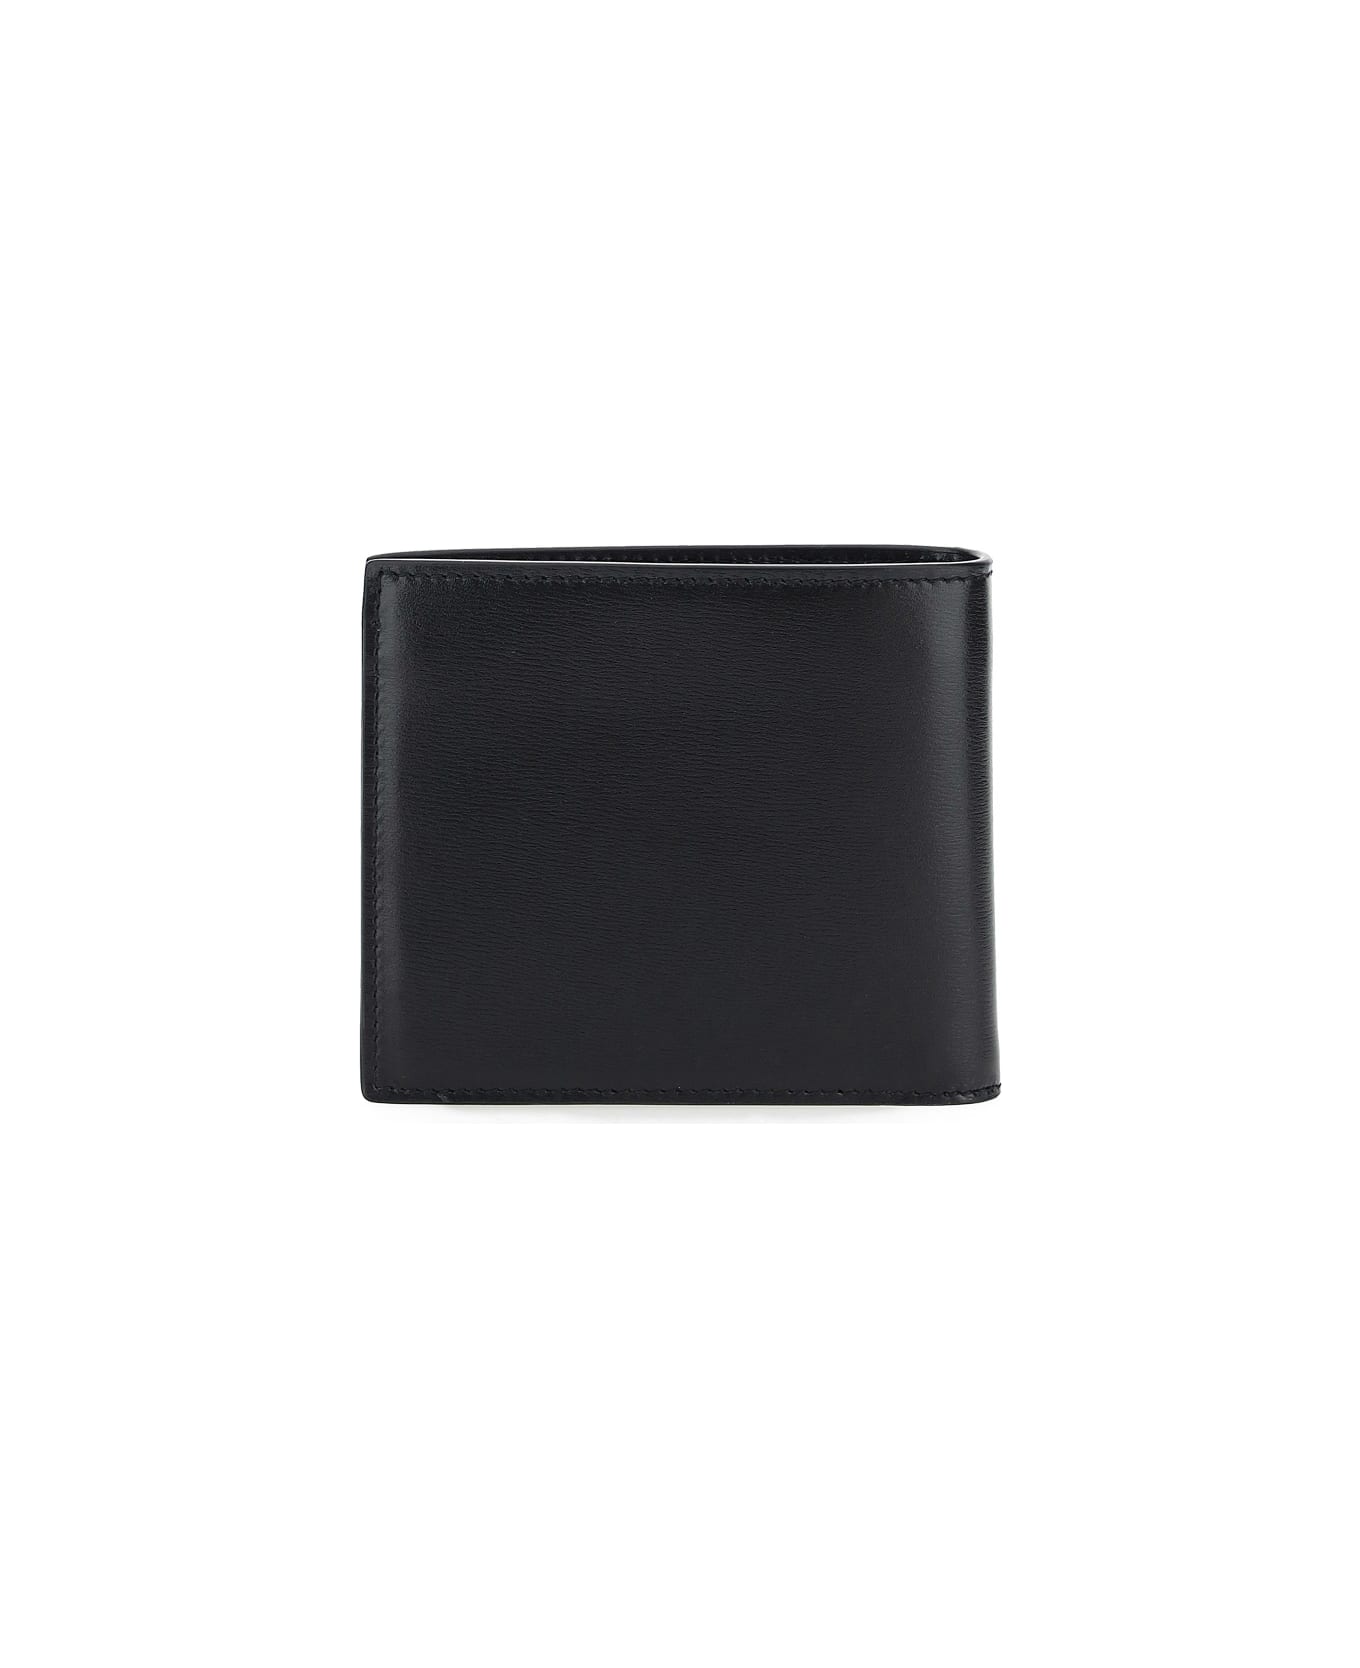 Saint Laurent Compact Leather Wallet - Nero 財布